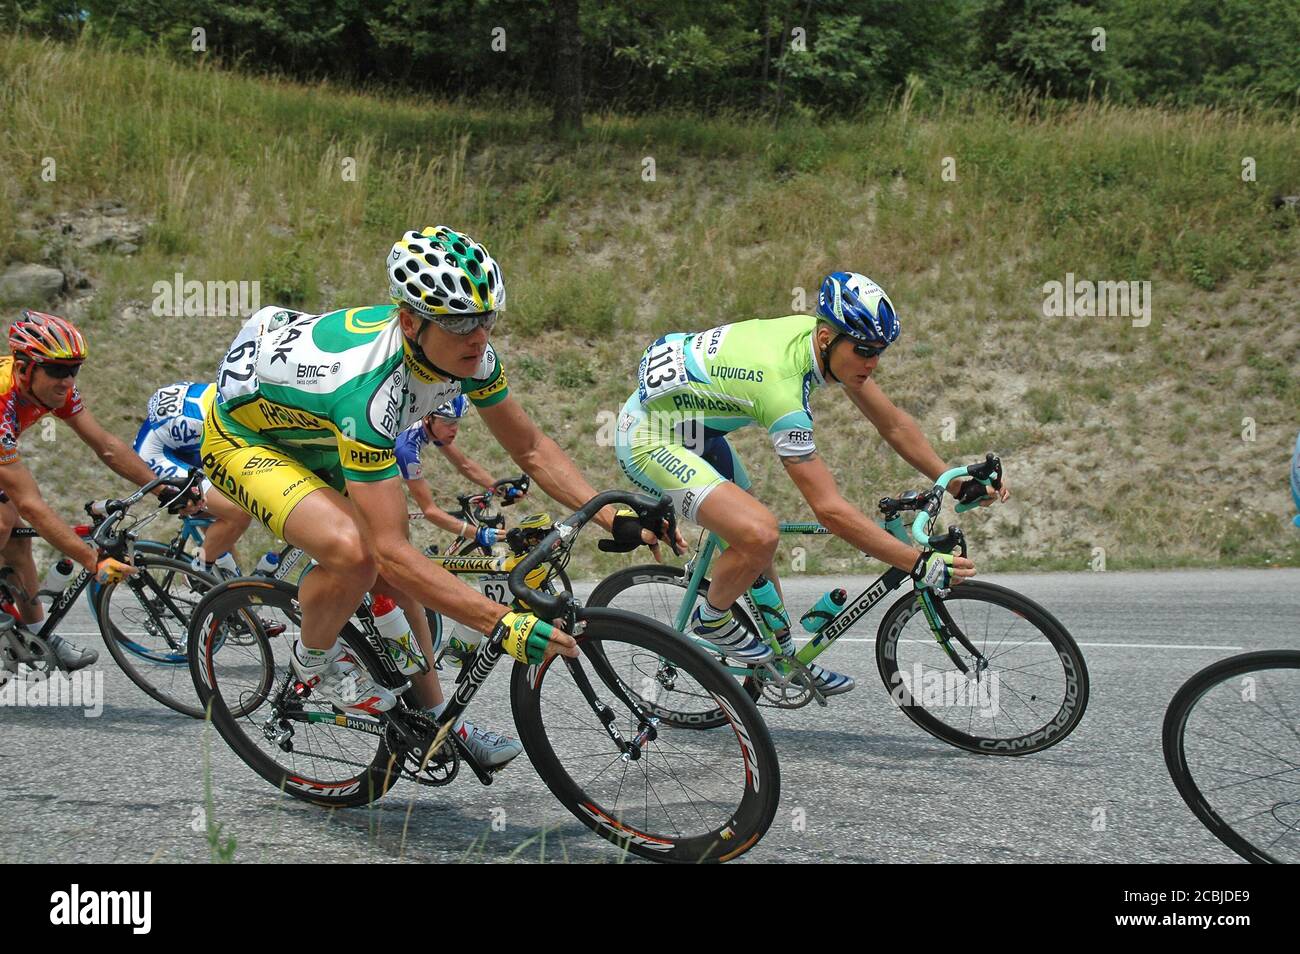 Bert Grabsch, (primo piano - numero 62) il ciclista stradale tedesco che si contende durante il Tour de France 2005 - tappa 11: Courchevel - Briançon. Foto Stock